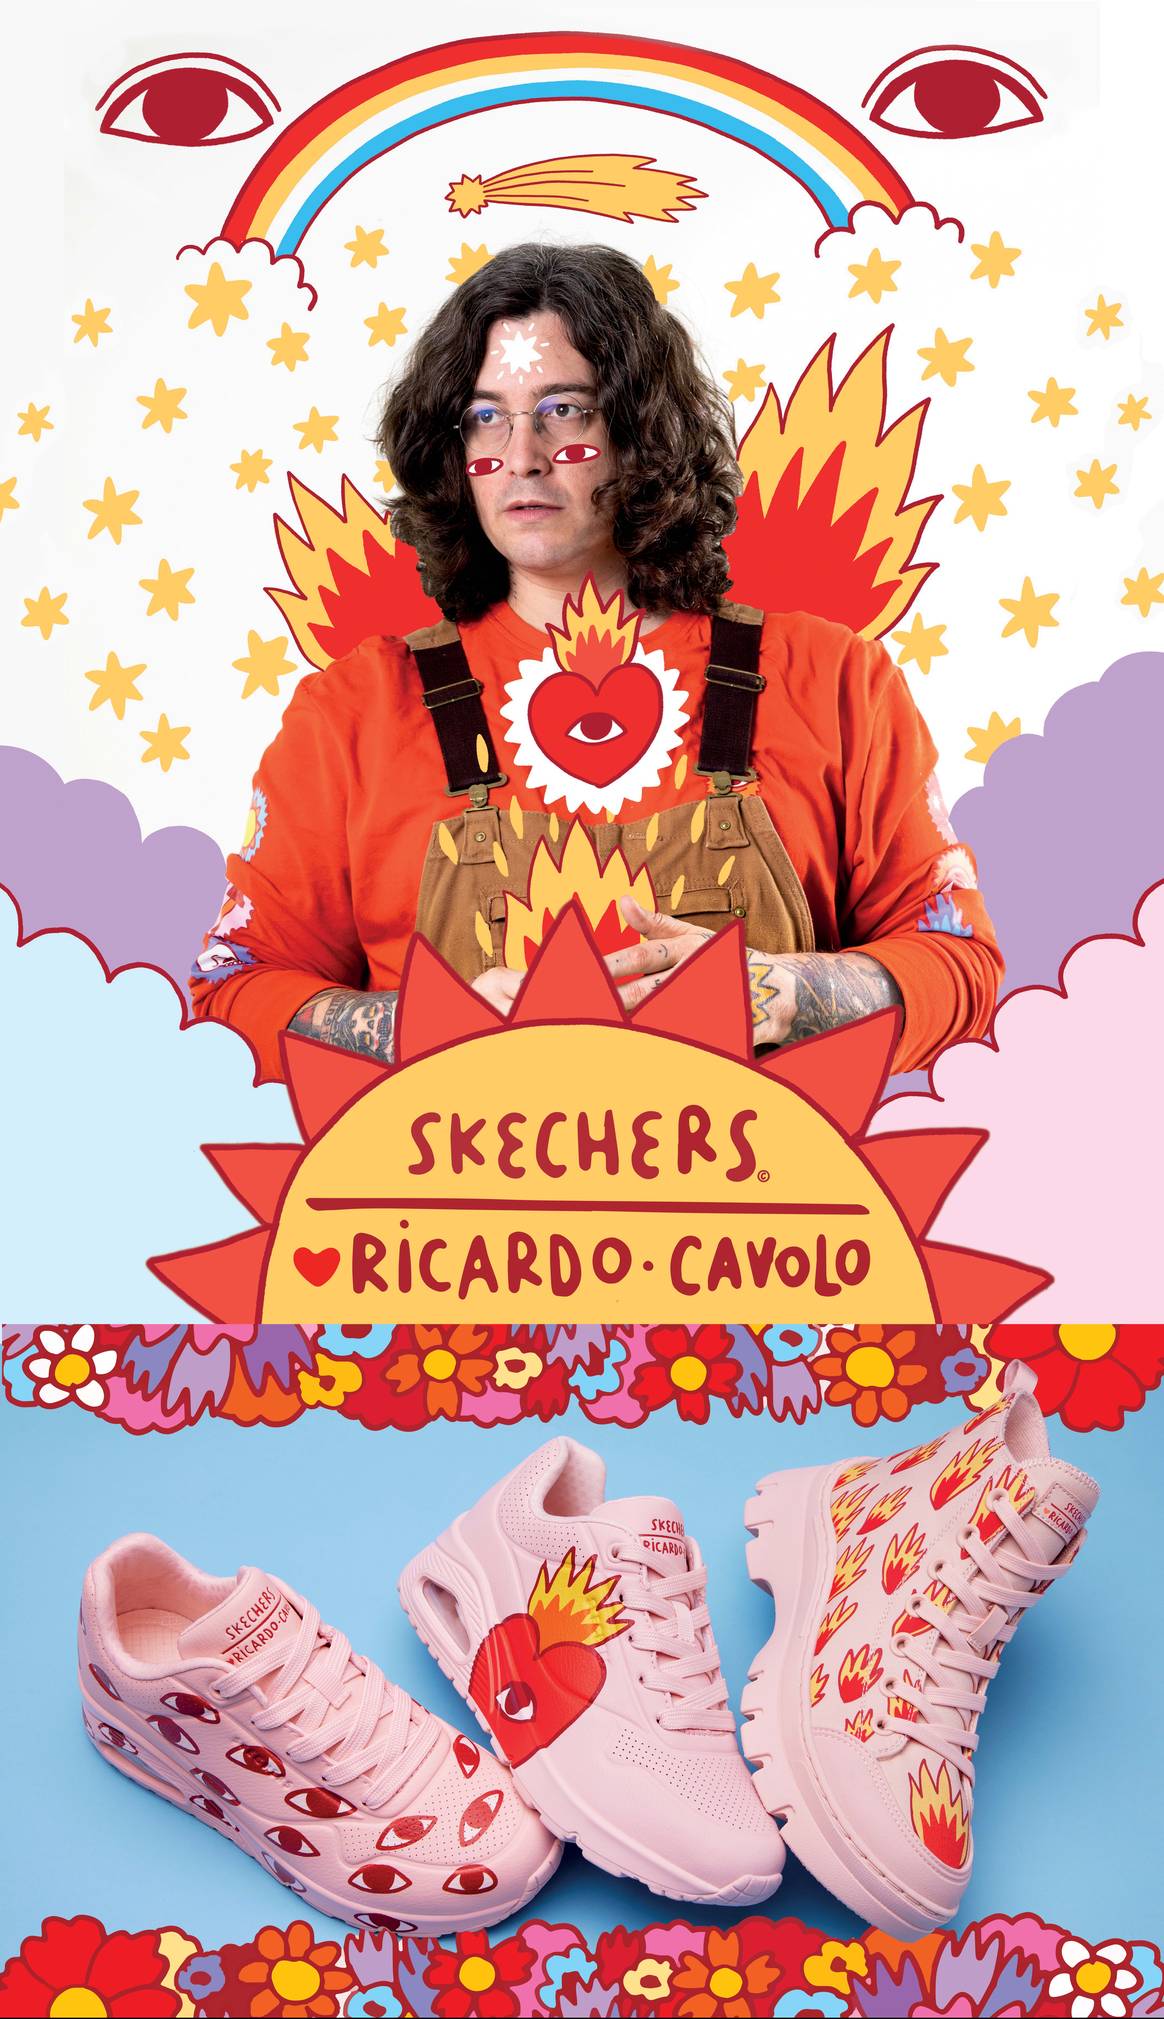 Skechers x Ricardo Cavolo